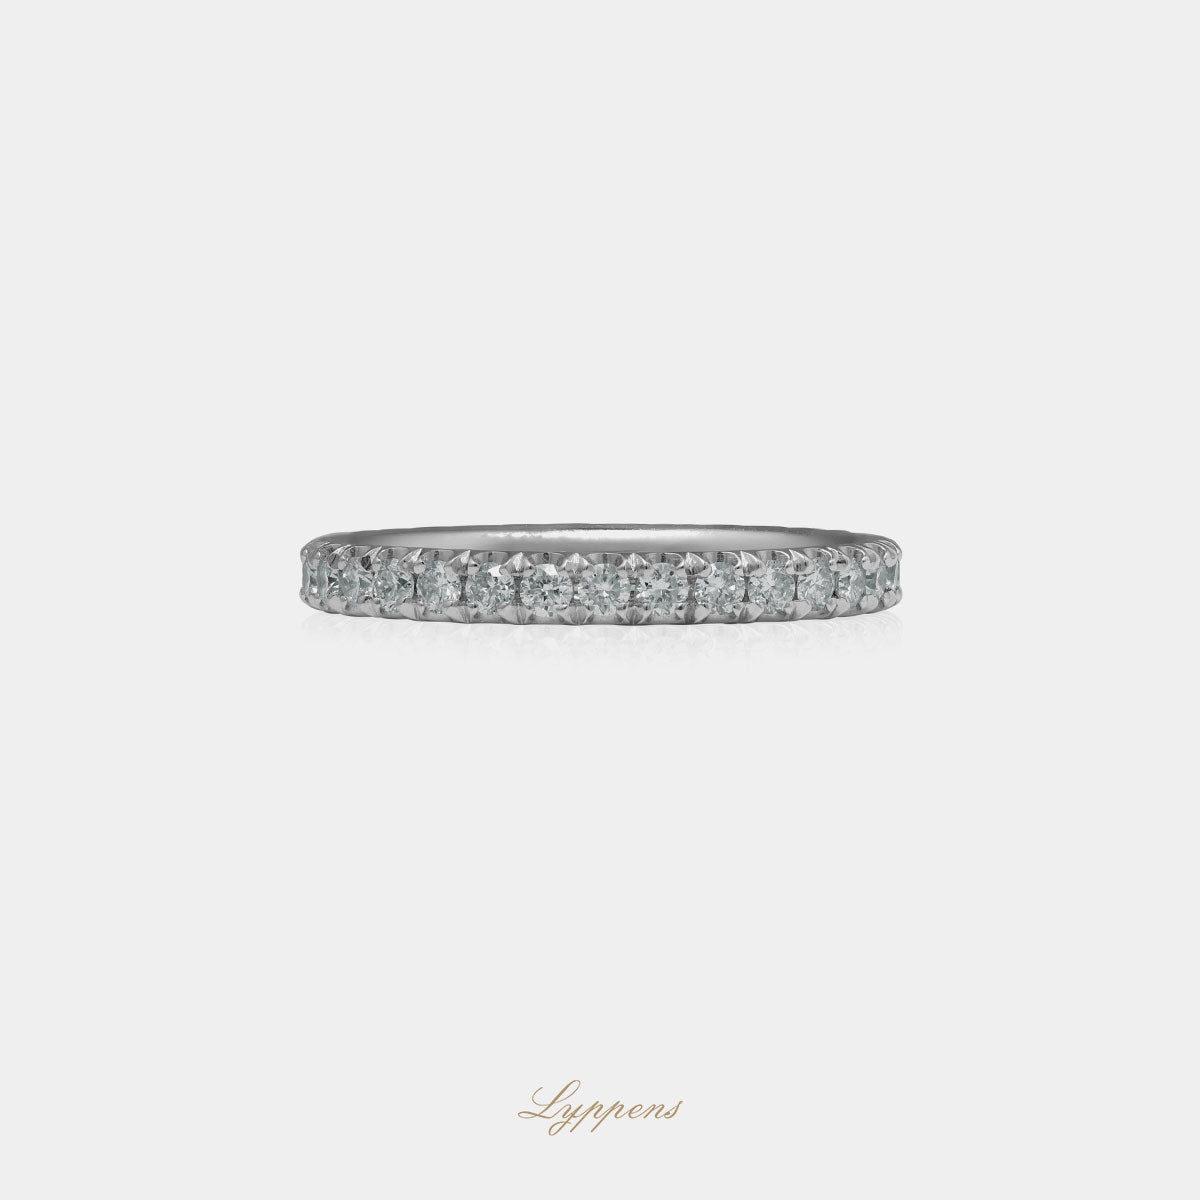 Witgouden alliance ring gezet met briljant geslepen diamant met een totaalgewicht van 0.75ct.